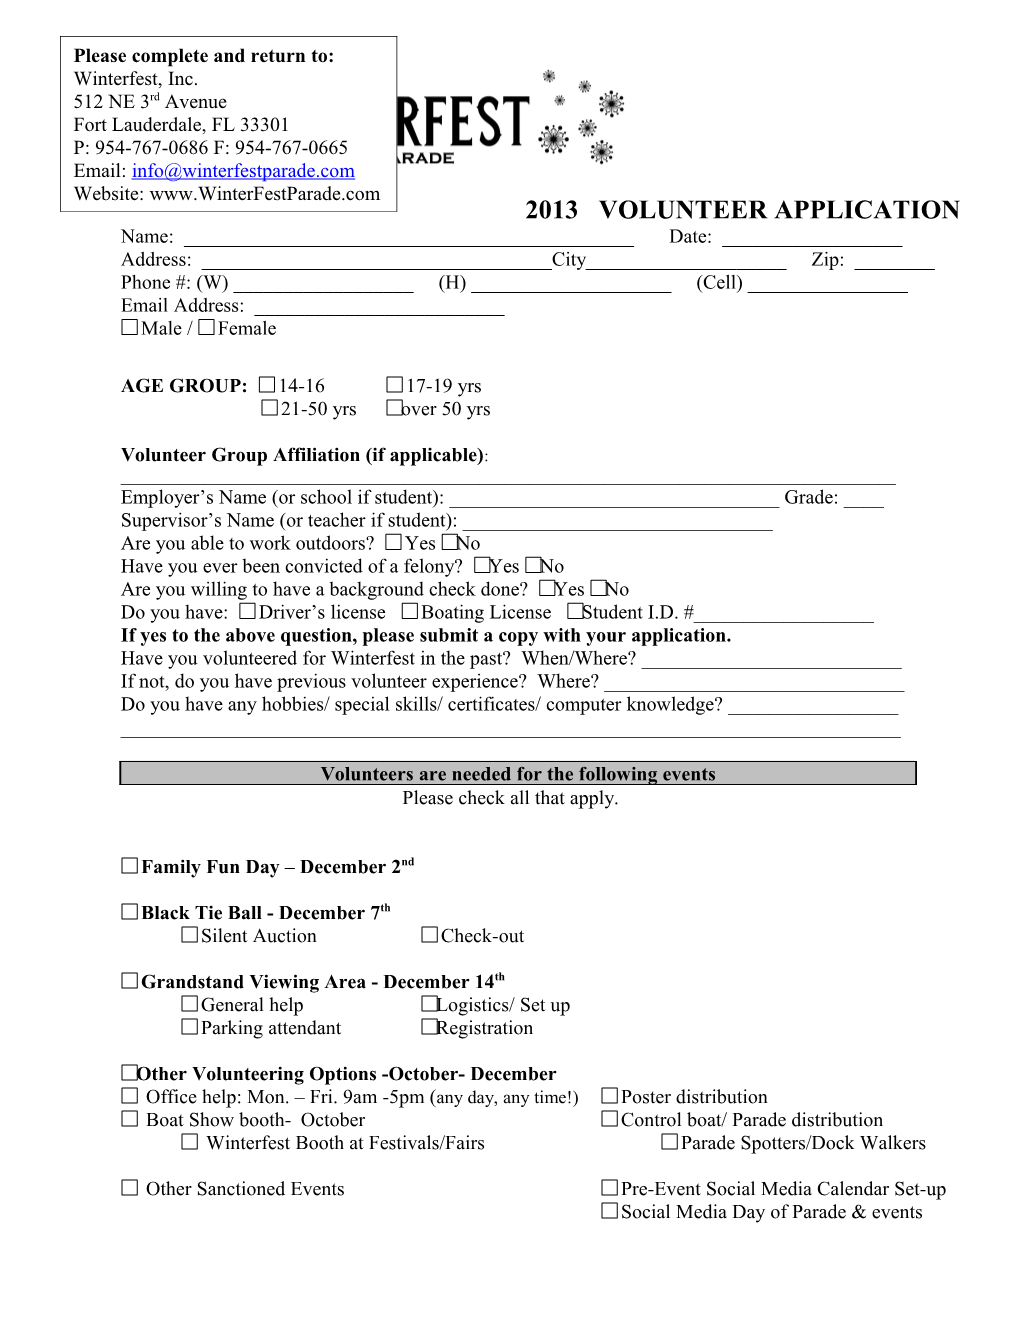 2013 Volunteer Application